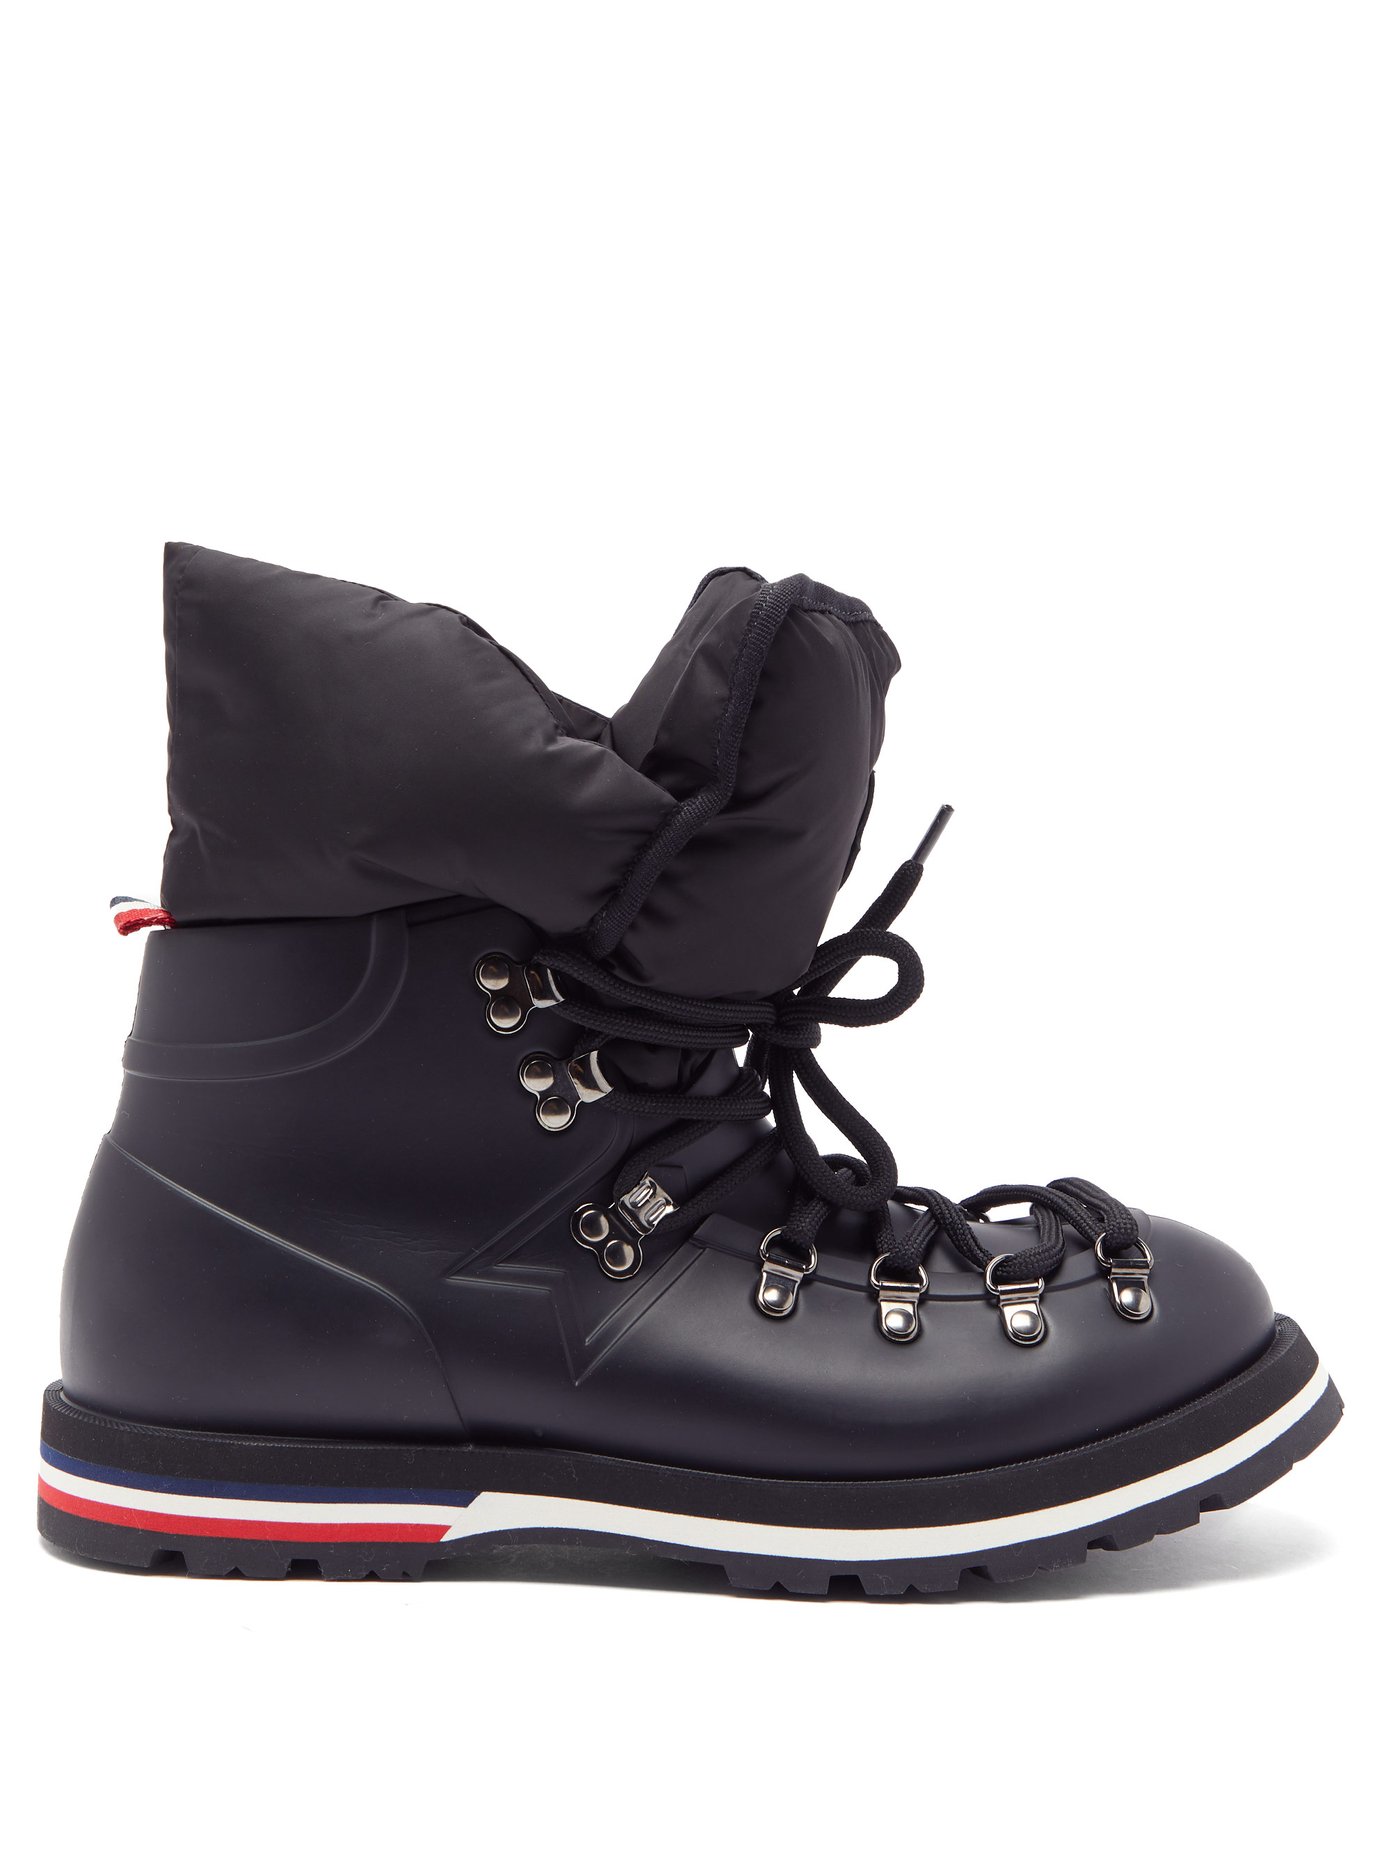 moncler rubber boots